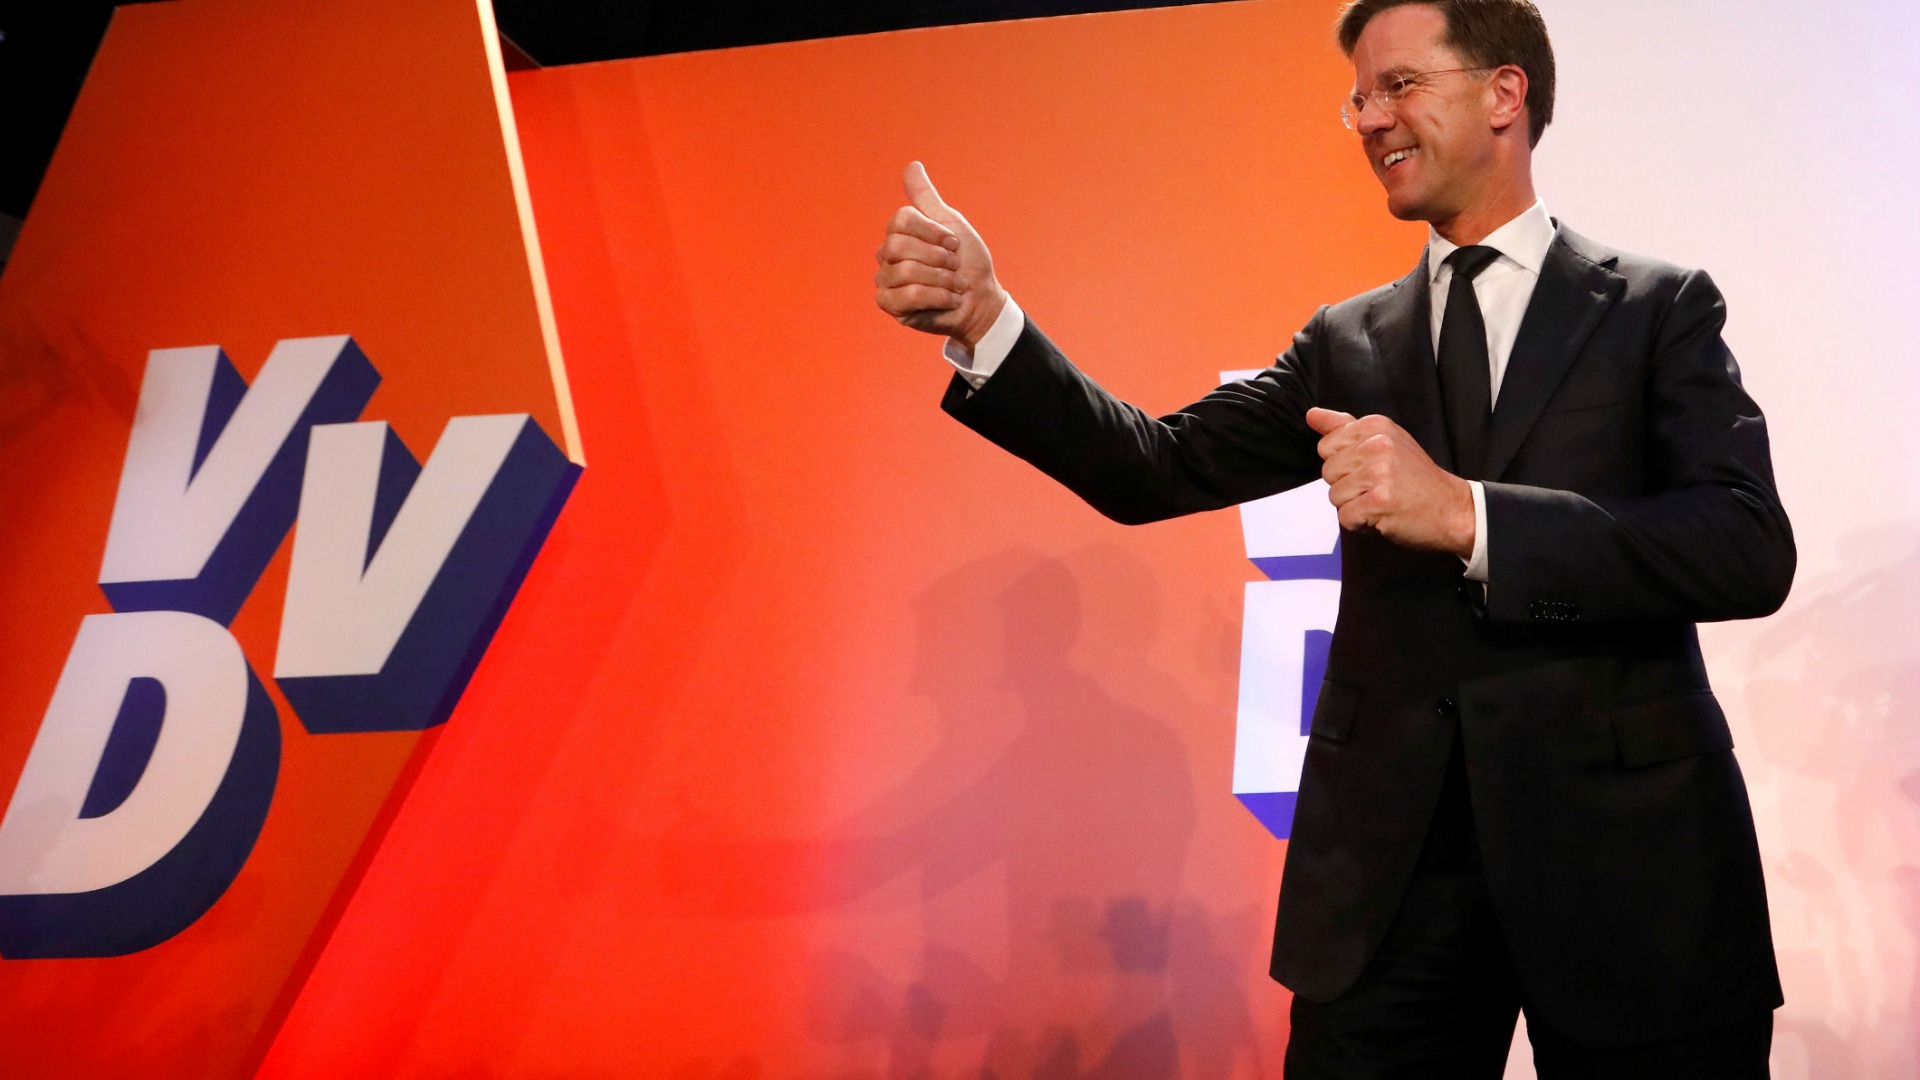 El primer ministro Mark Rutte se impone al ultraderechista Wilders en las elecciones holandesas